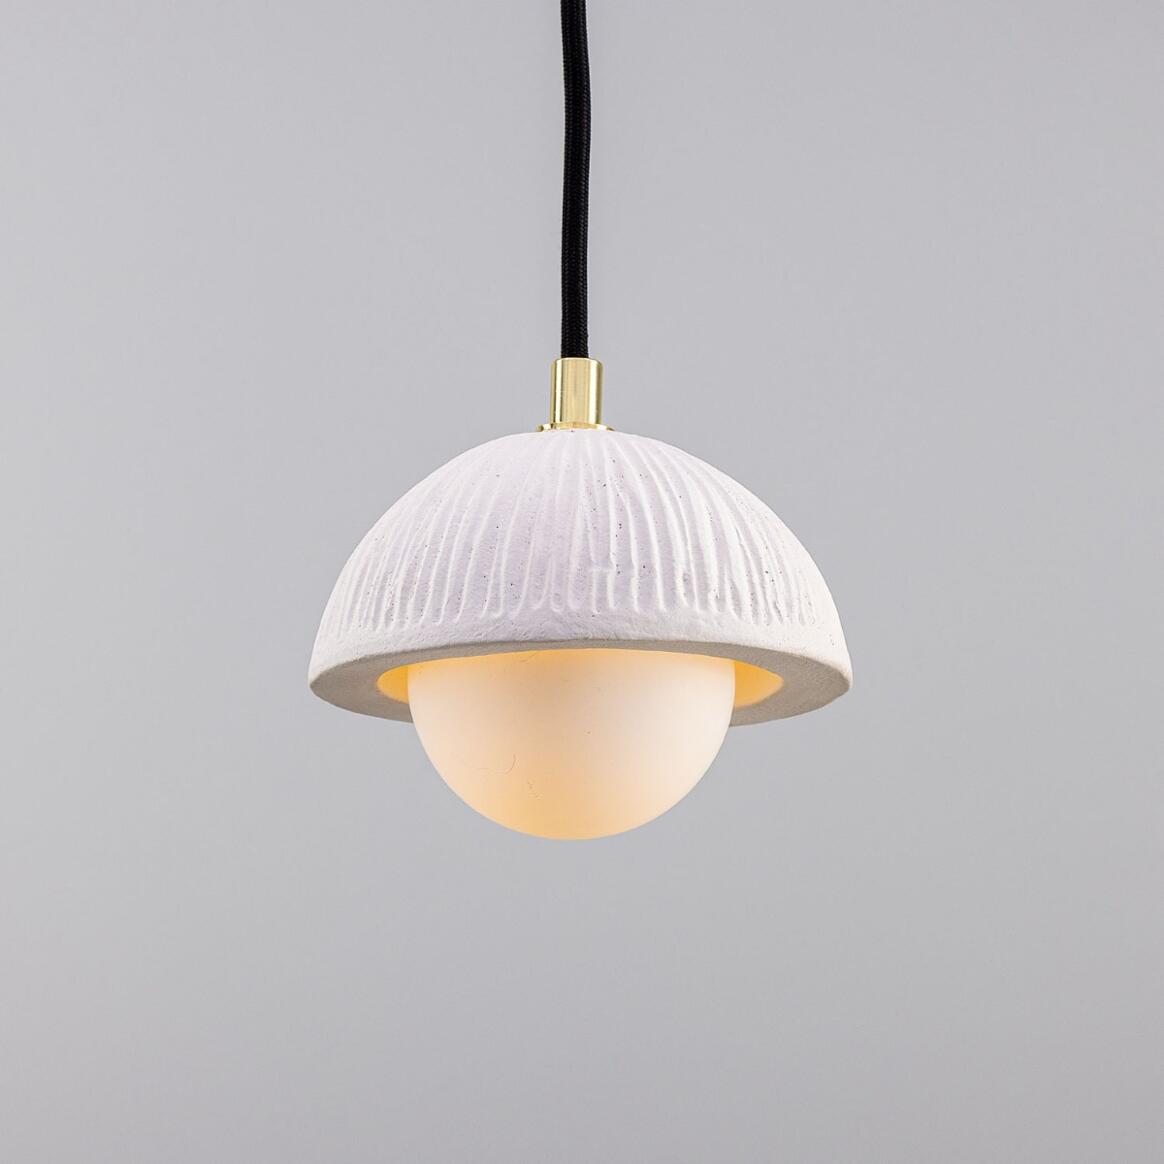 Ferox Small Ceramic Dome Pendant Light 14cm, Matte White Striped main product image